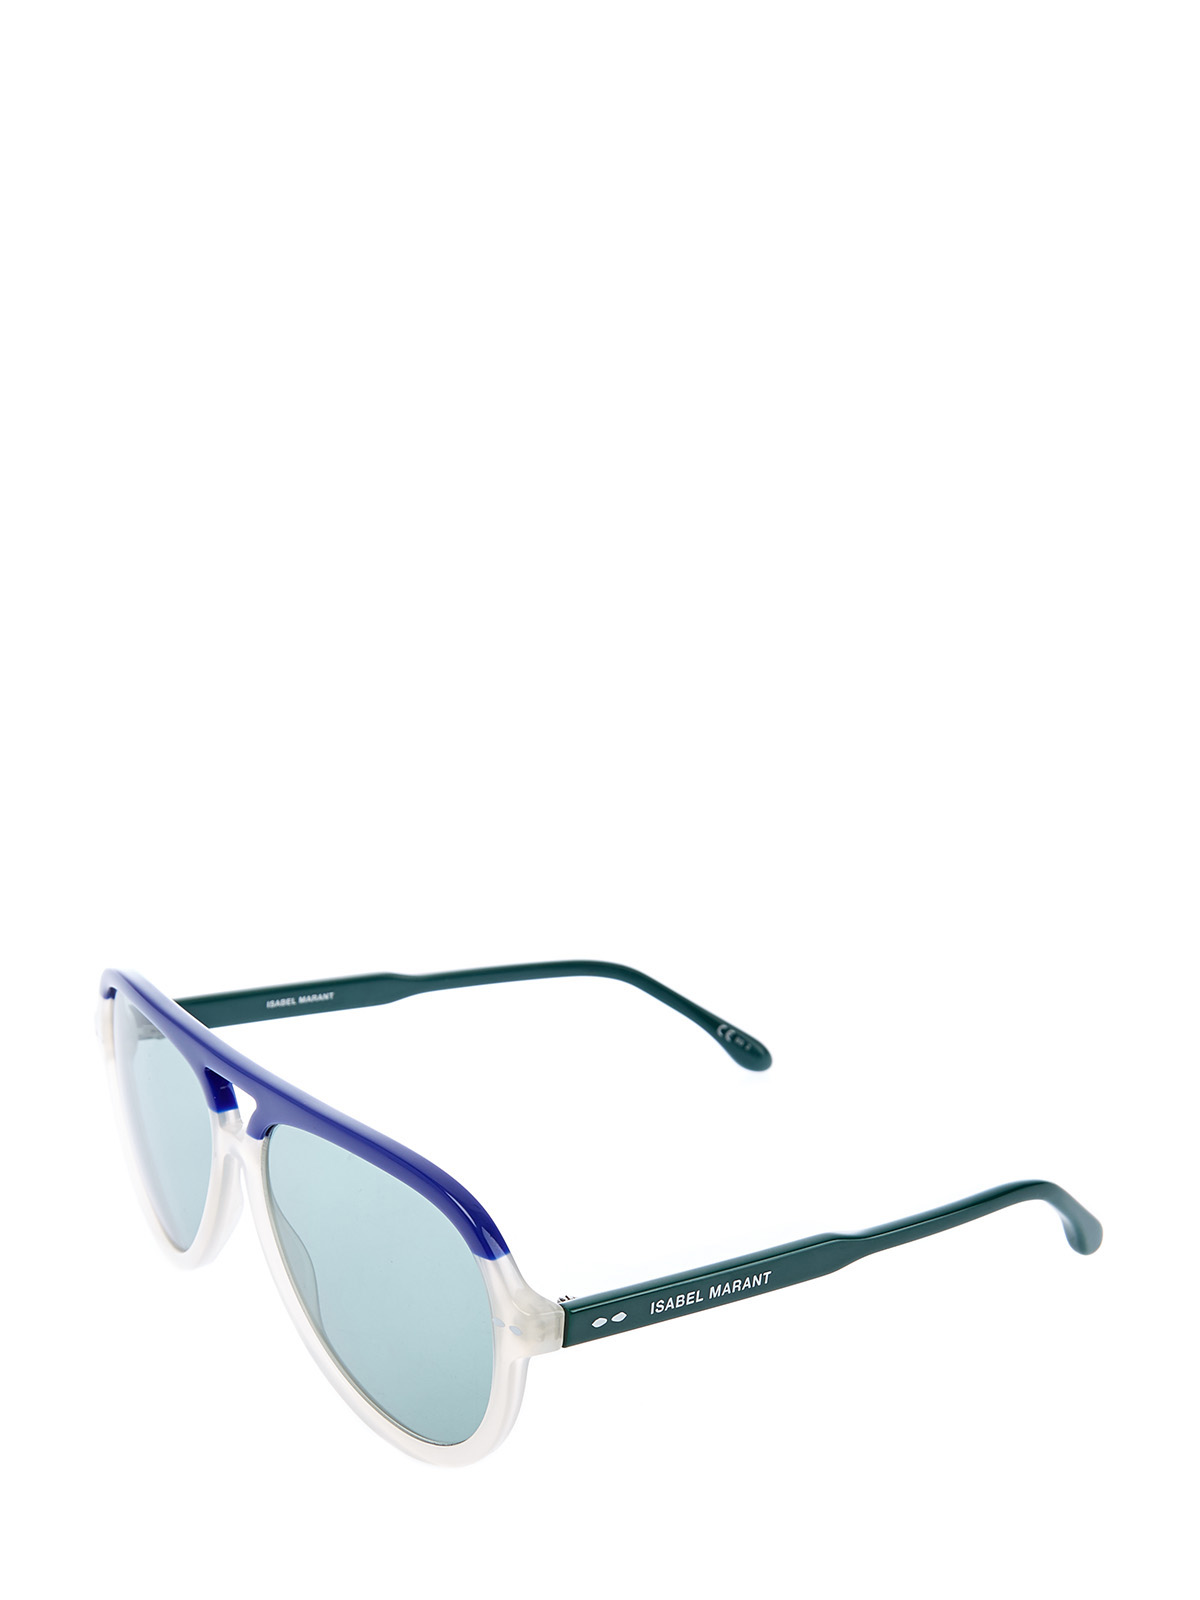 Очки-авиаторы из легкого ацетата в стиле colorblock Isabel Marant(sunglasses), цвет мульти - фото 2